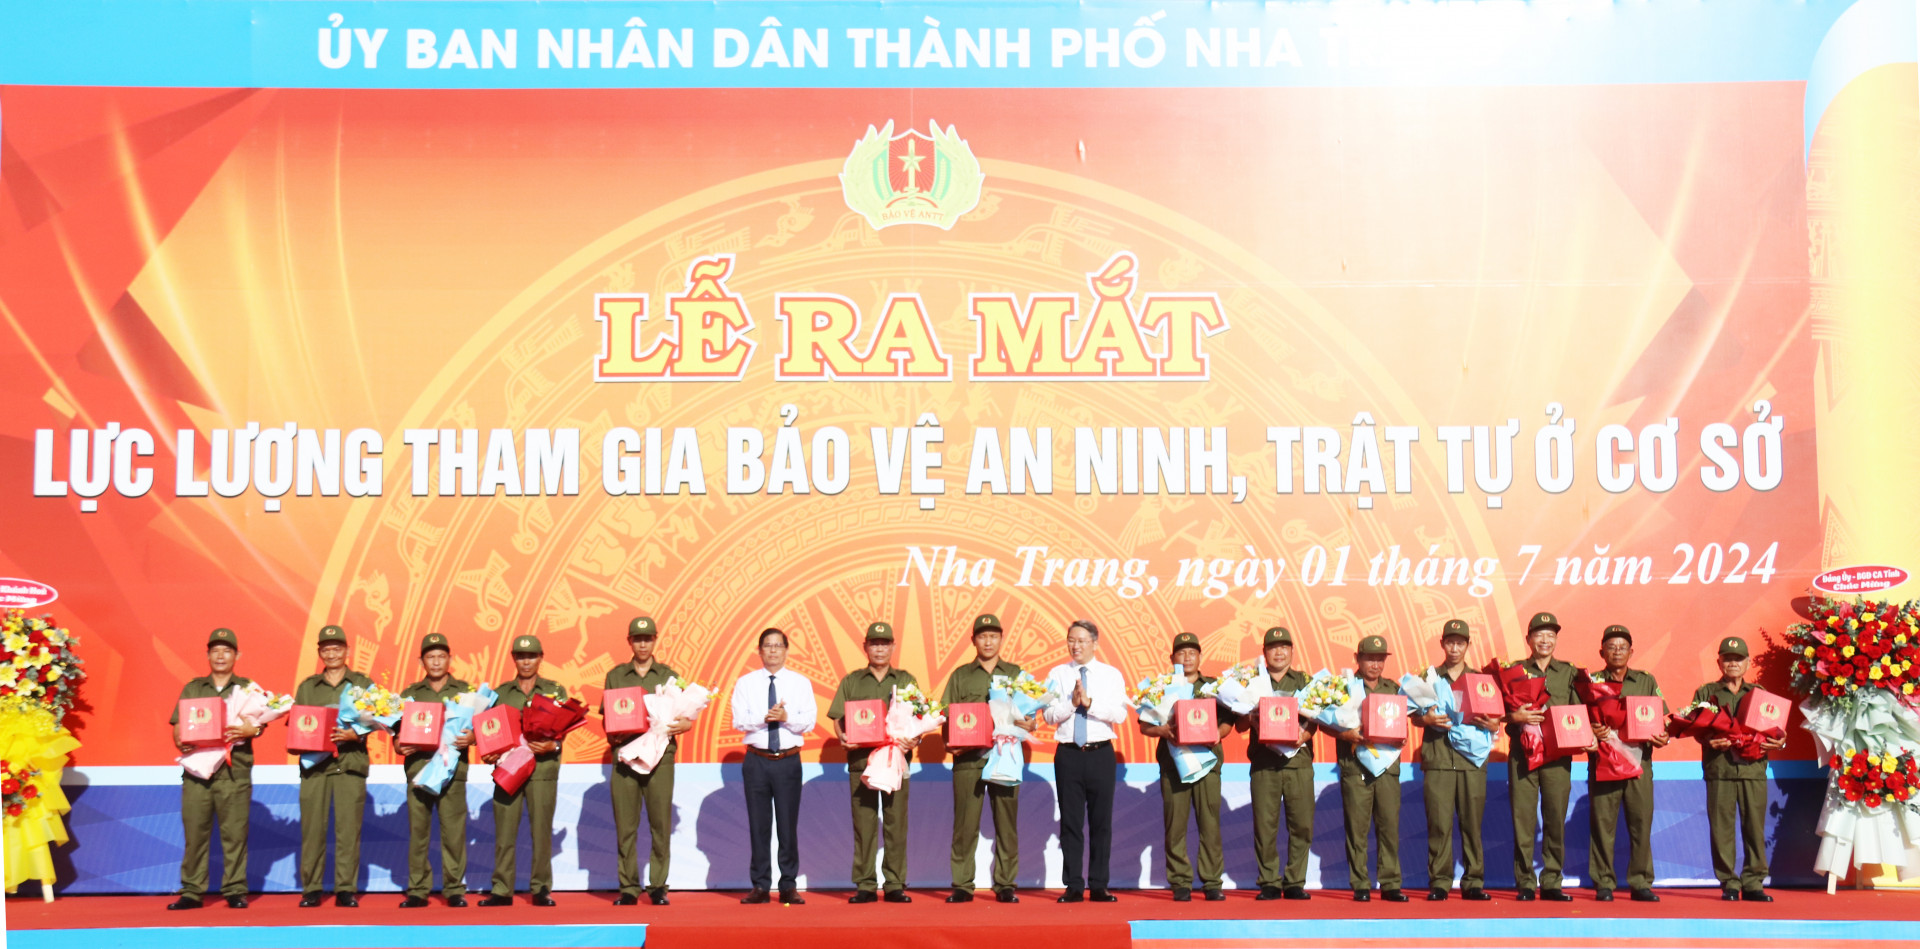 Các đồng chí lãnh đạo tỉnh tặng quà, chúc mừng lực lượng tham gia bảo vệ an ninh, trật tự ở cơ sở TP. Nha Trang